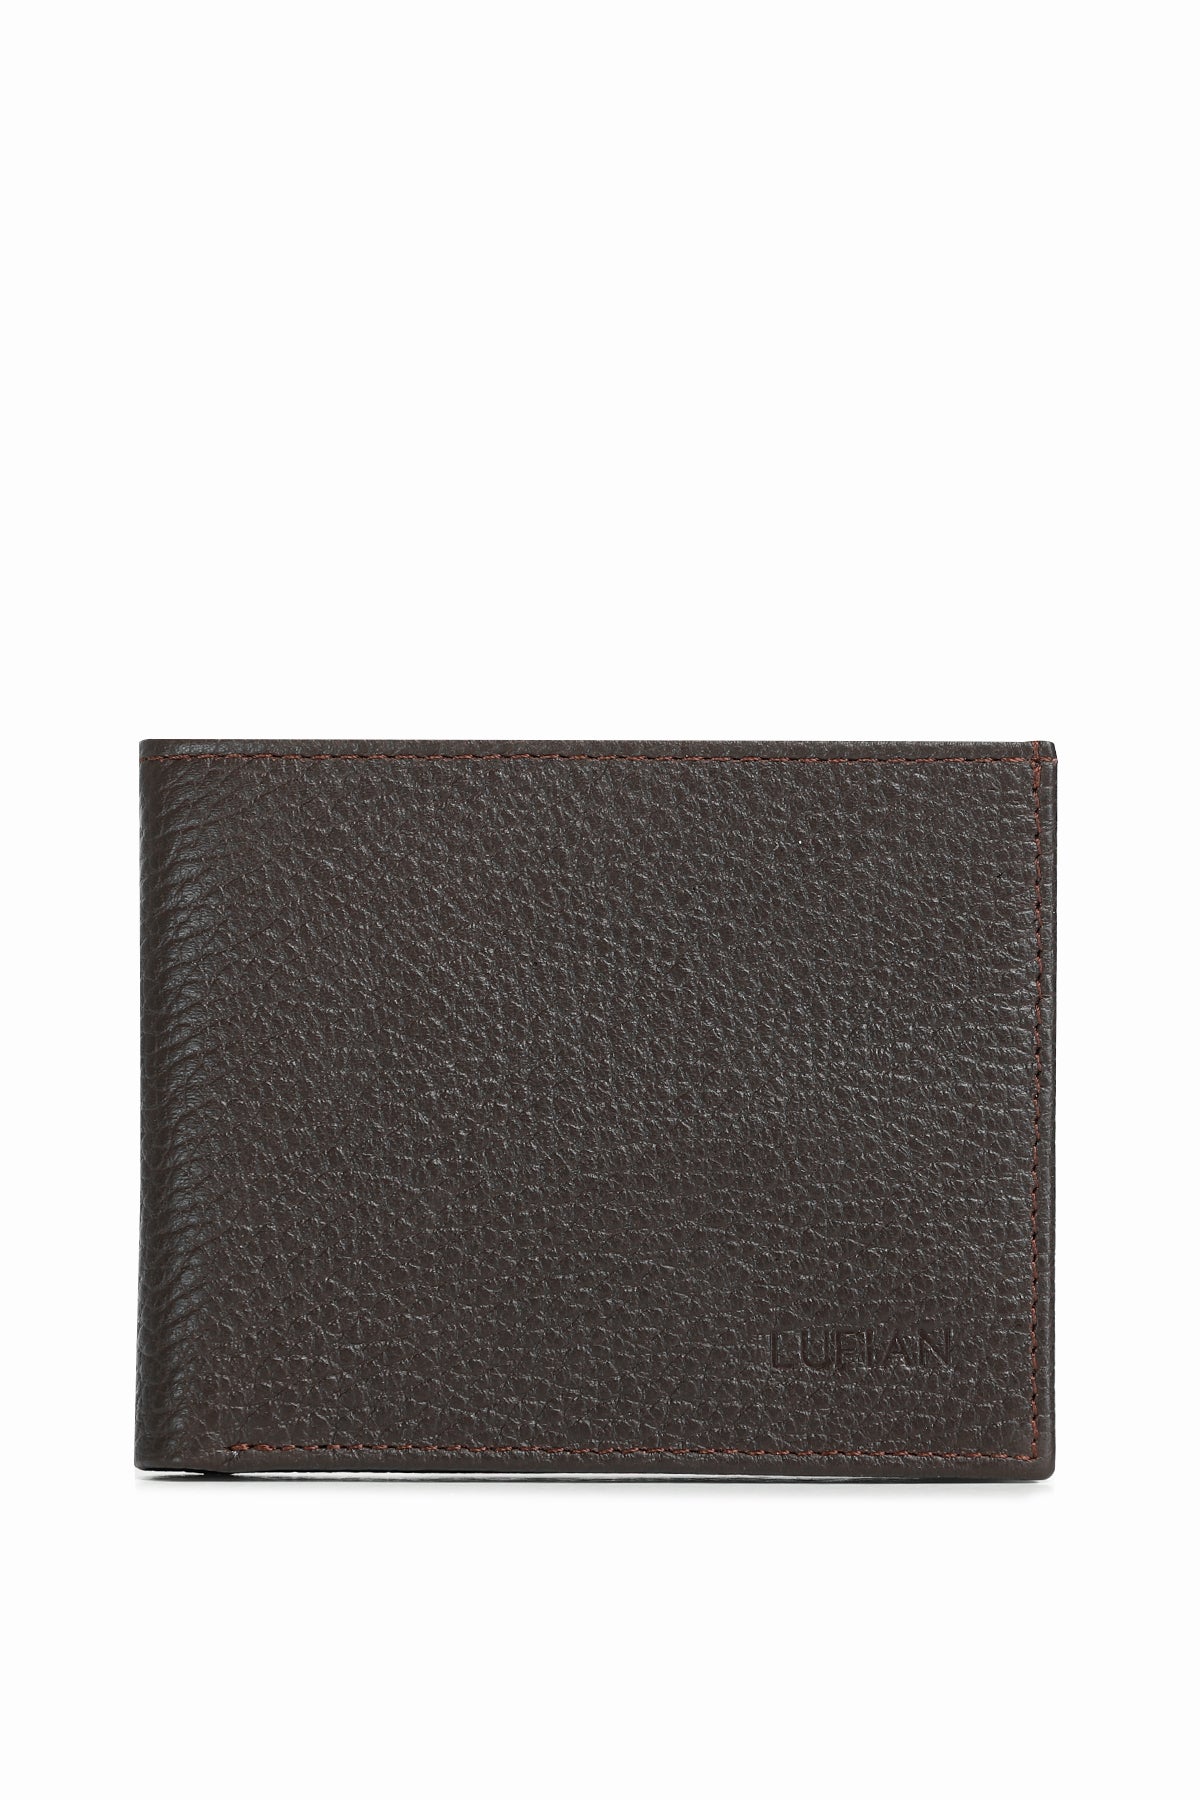 Jimmy Men's Leather Wallet